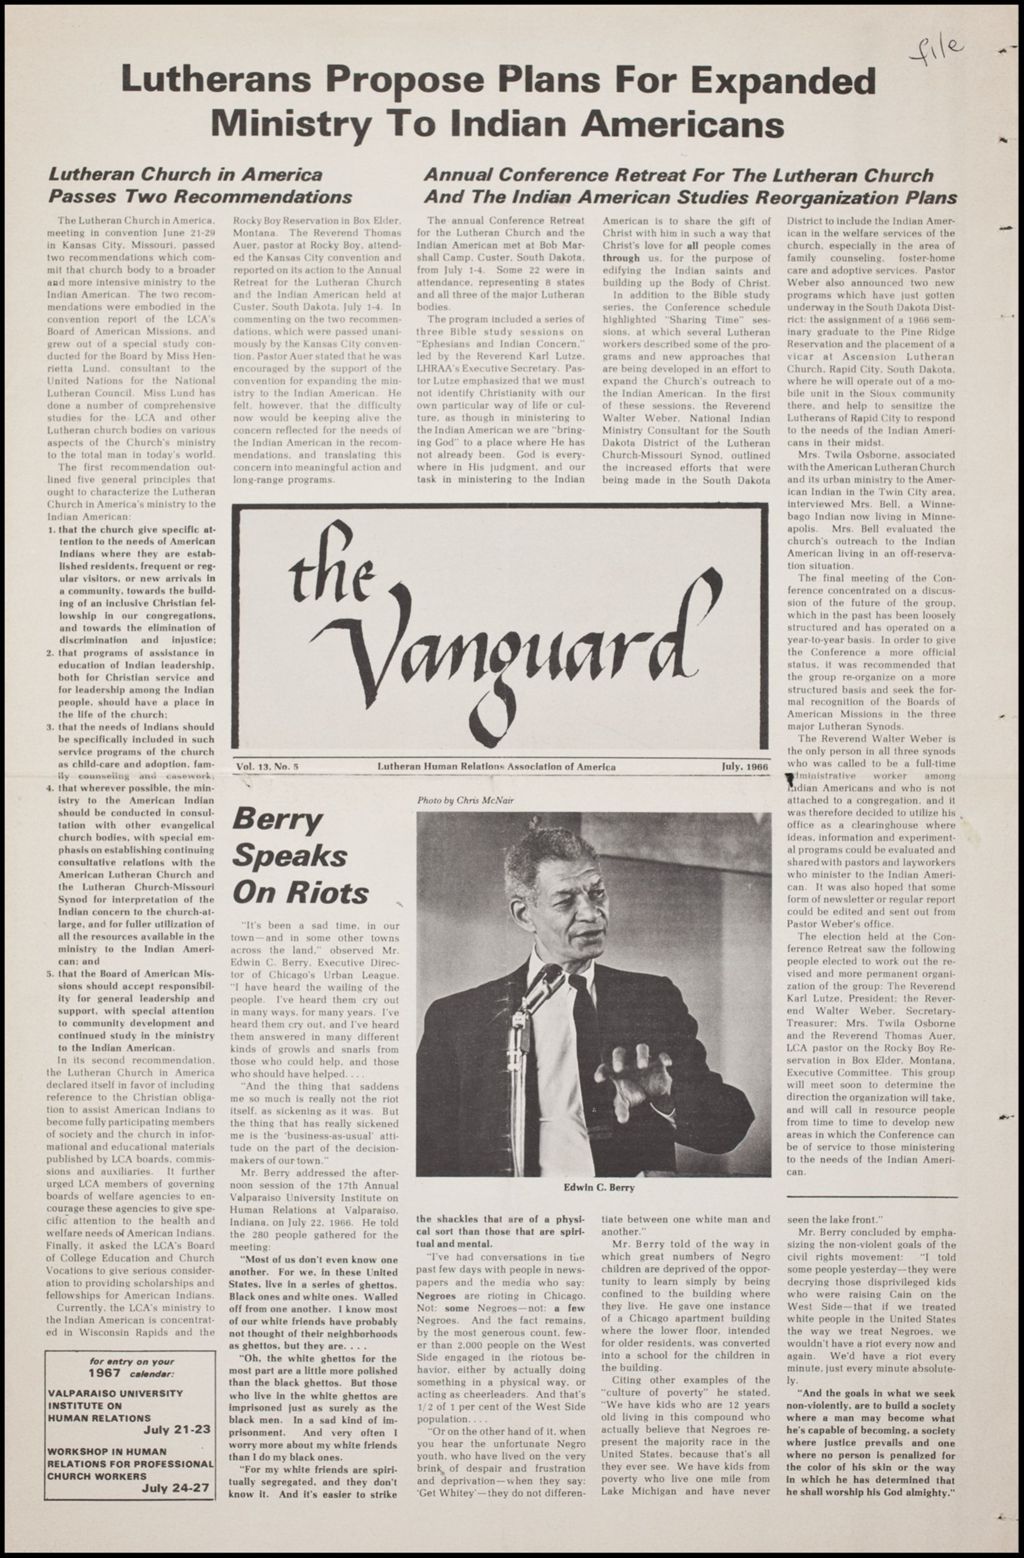 The Vanguard - Newsletter, 1966 (Folder IV-760)